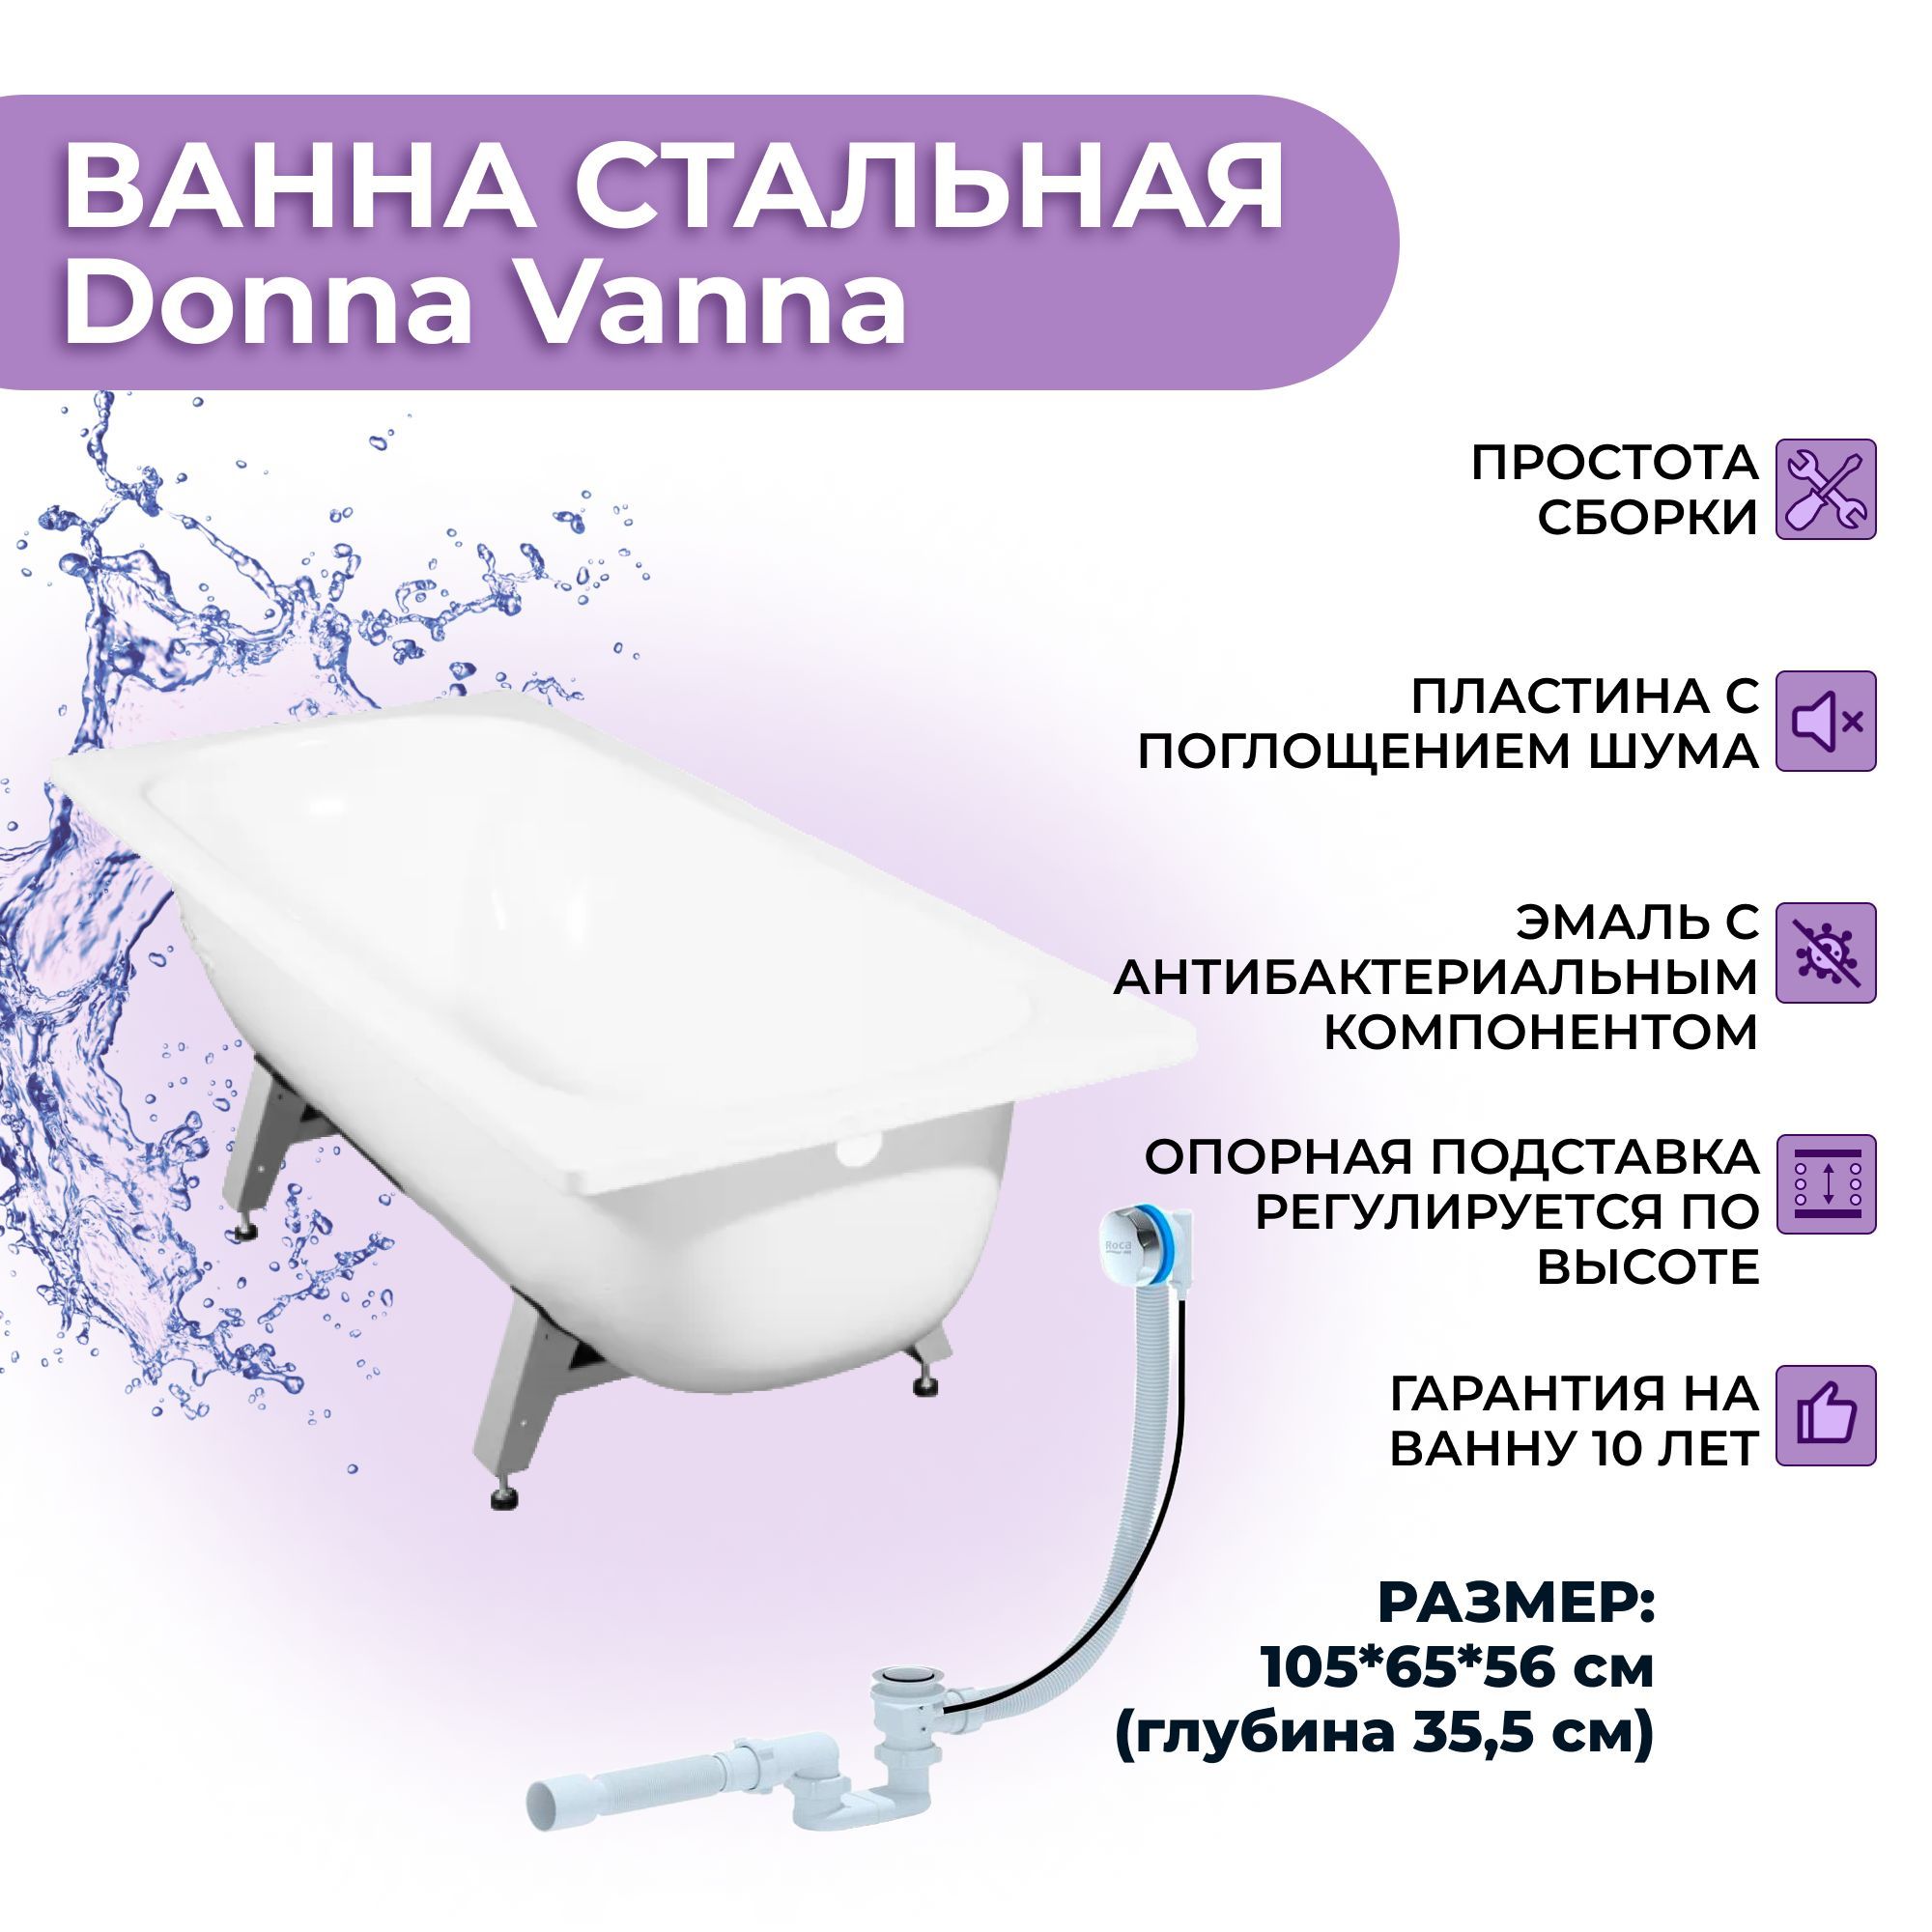 Donna Vanna на каркасе. Габариты ванны Donna Vanna. Стальная ванна виз 120 см. Опорная подставка для ванны виз инструкция.